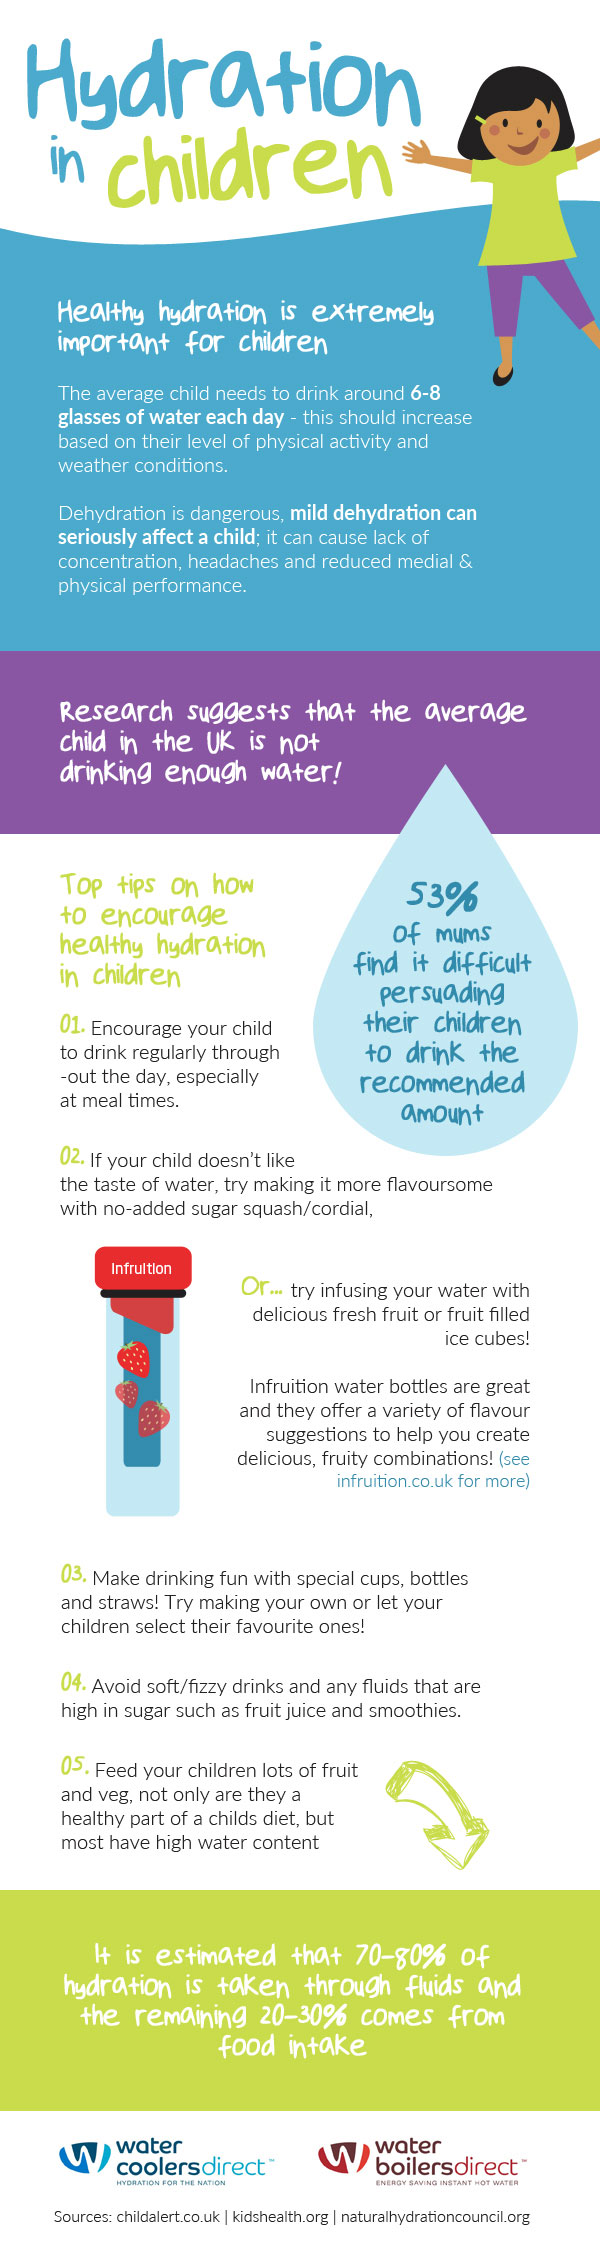 Hydration in children